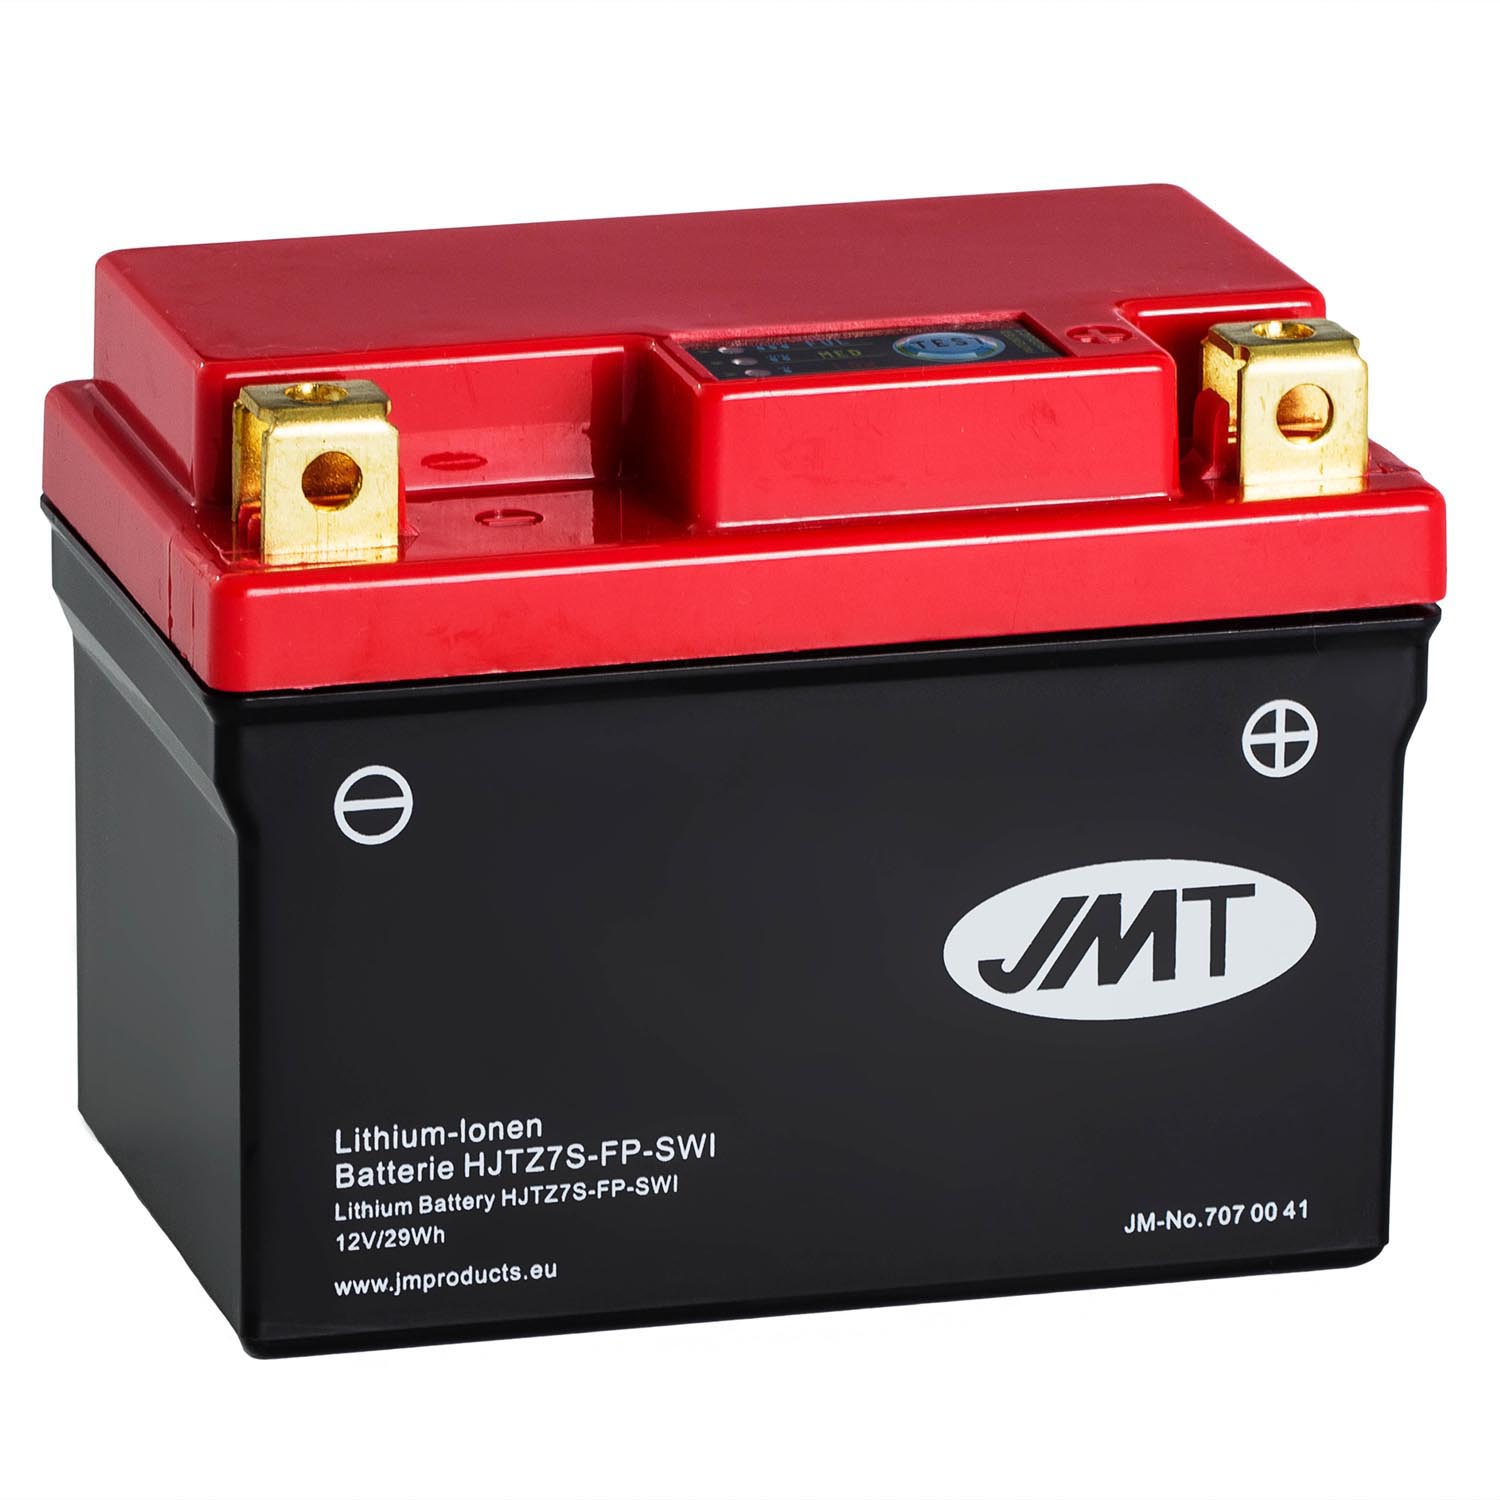 JMT Lithium-Ionen-Motorrad-Batterie HJTZ7S-FP 12V